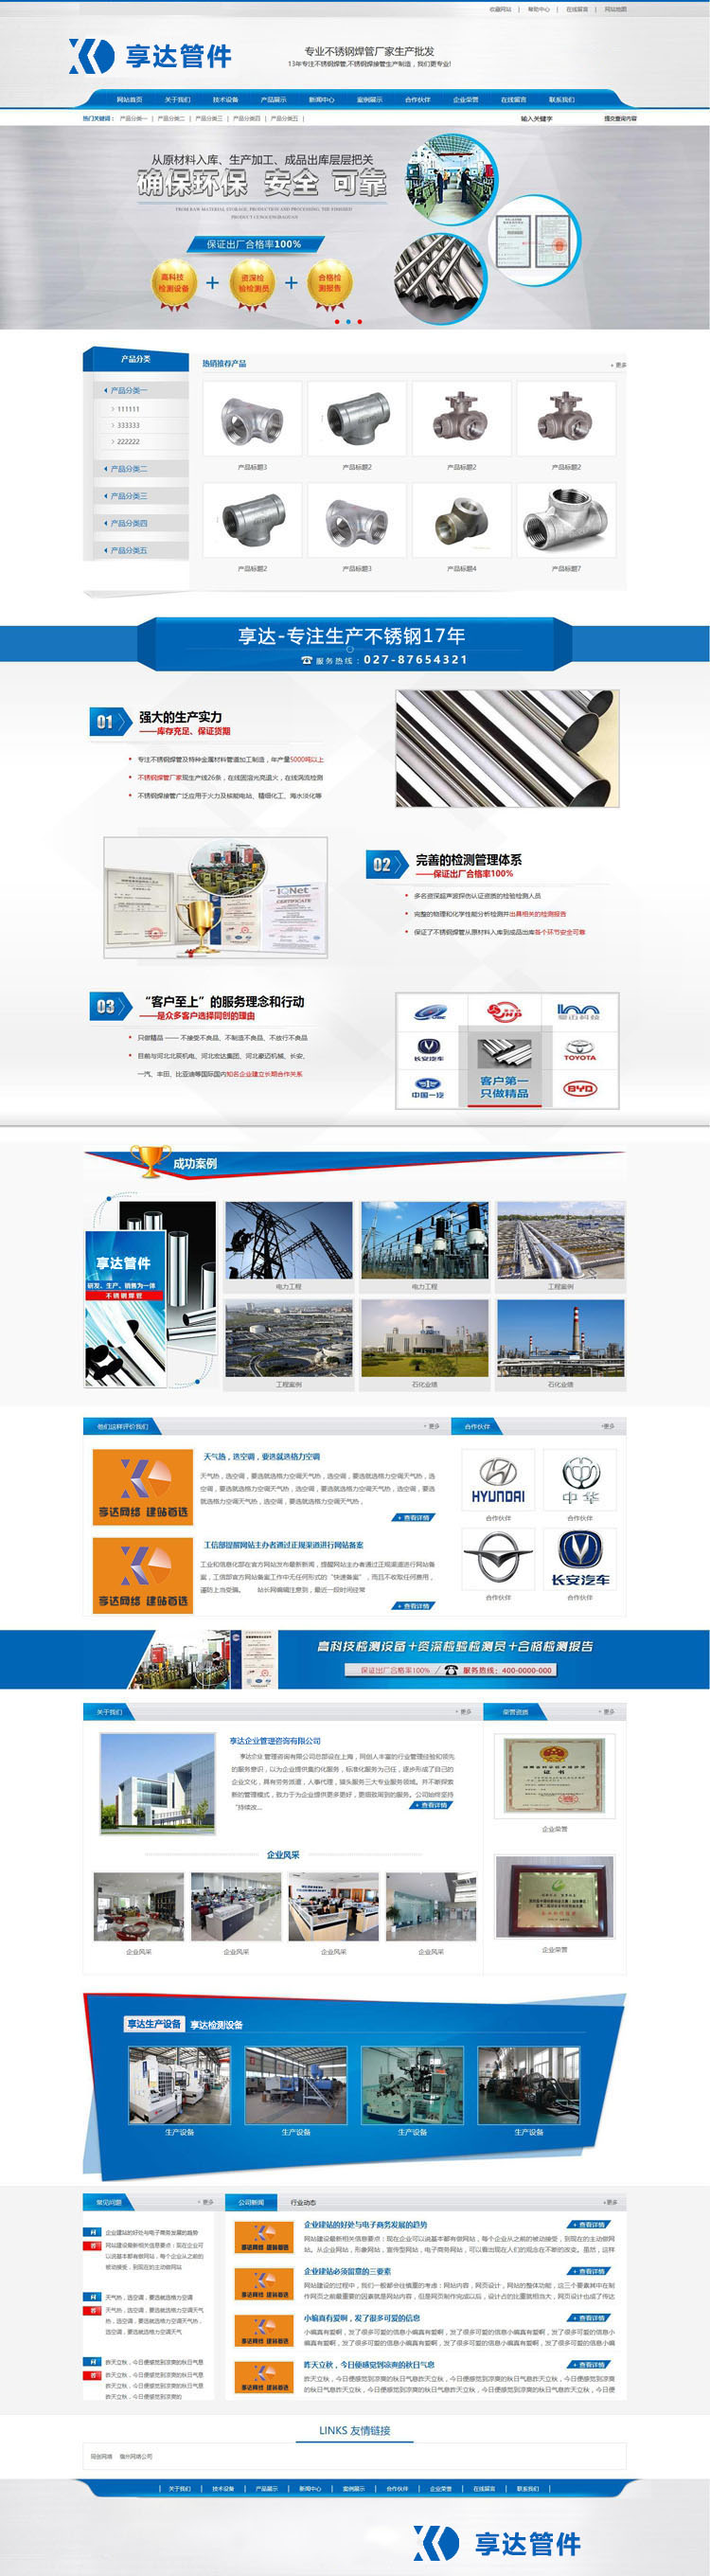 无锡企业网站建设 | 管道配件生产企业产品展示网站制作 管道配件网站制作图片